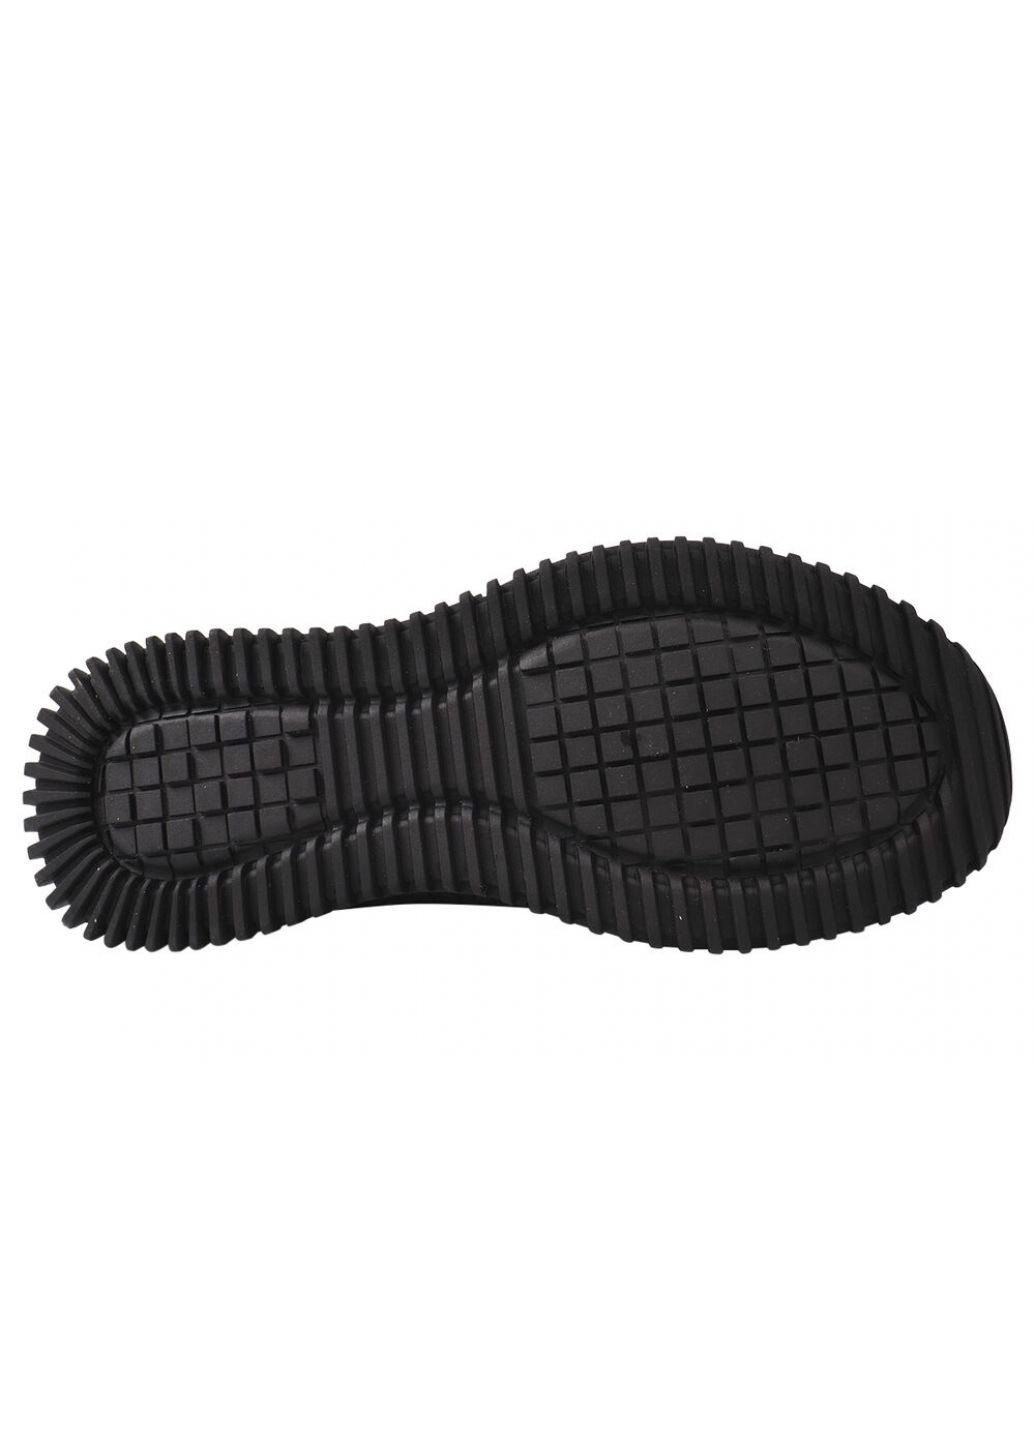 Черные кроссовки мужские из текстиля, на низком ходу, на шнуровке, черные, Berisstini 14-21DK